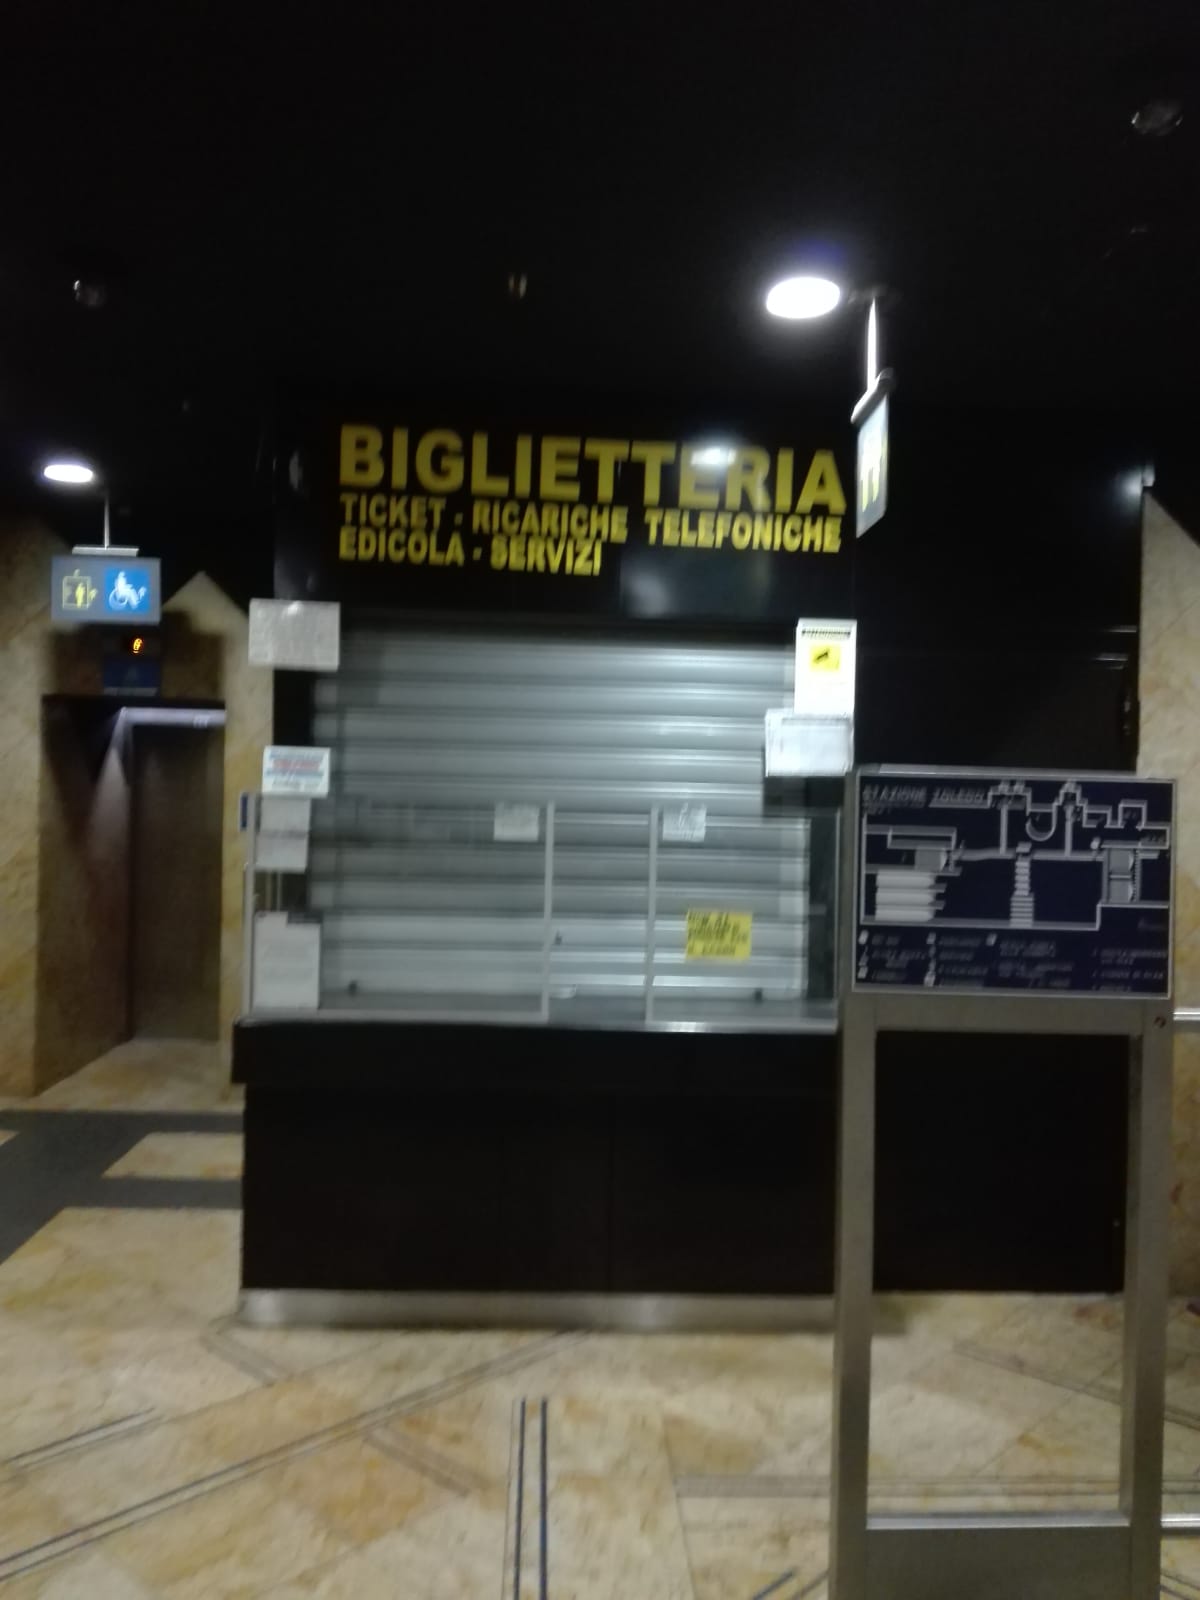 Napoli, la biglietteria Toledo chiusa per ferie e funziona solo una di quelle automatiche: caos e proteste dei viaggiatori